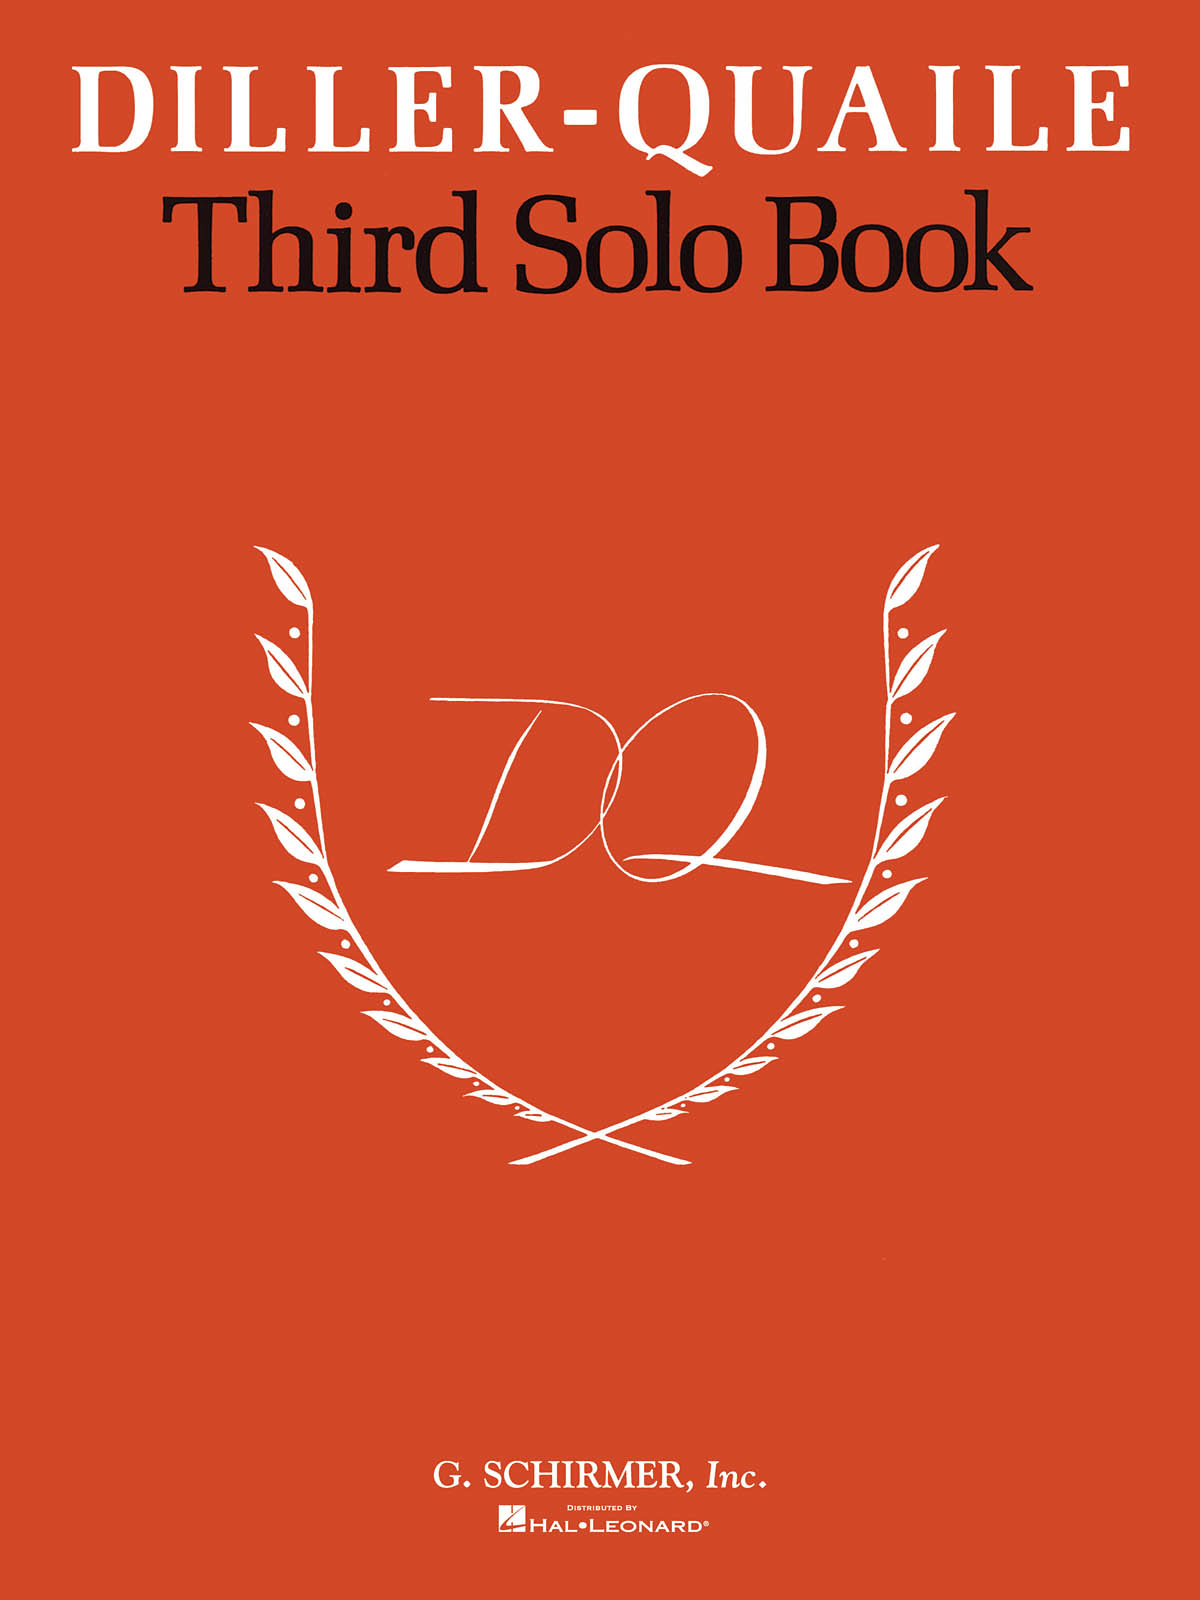 Diller-Quaile Piano Series Third Solo Book